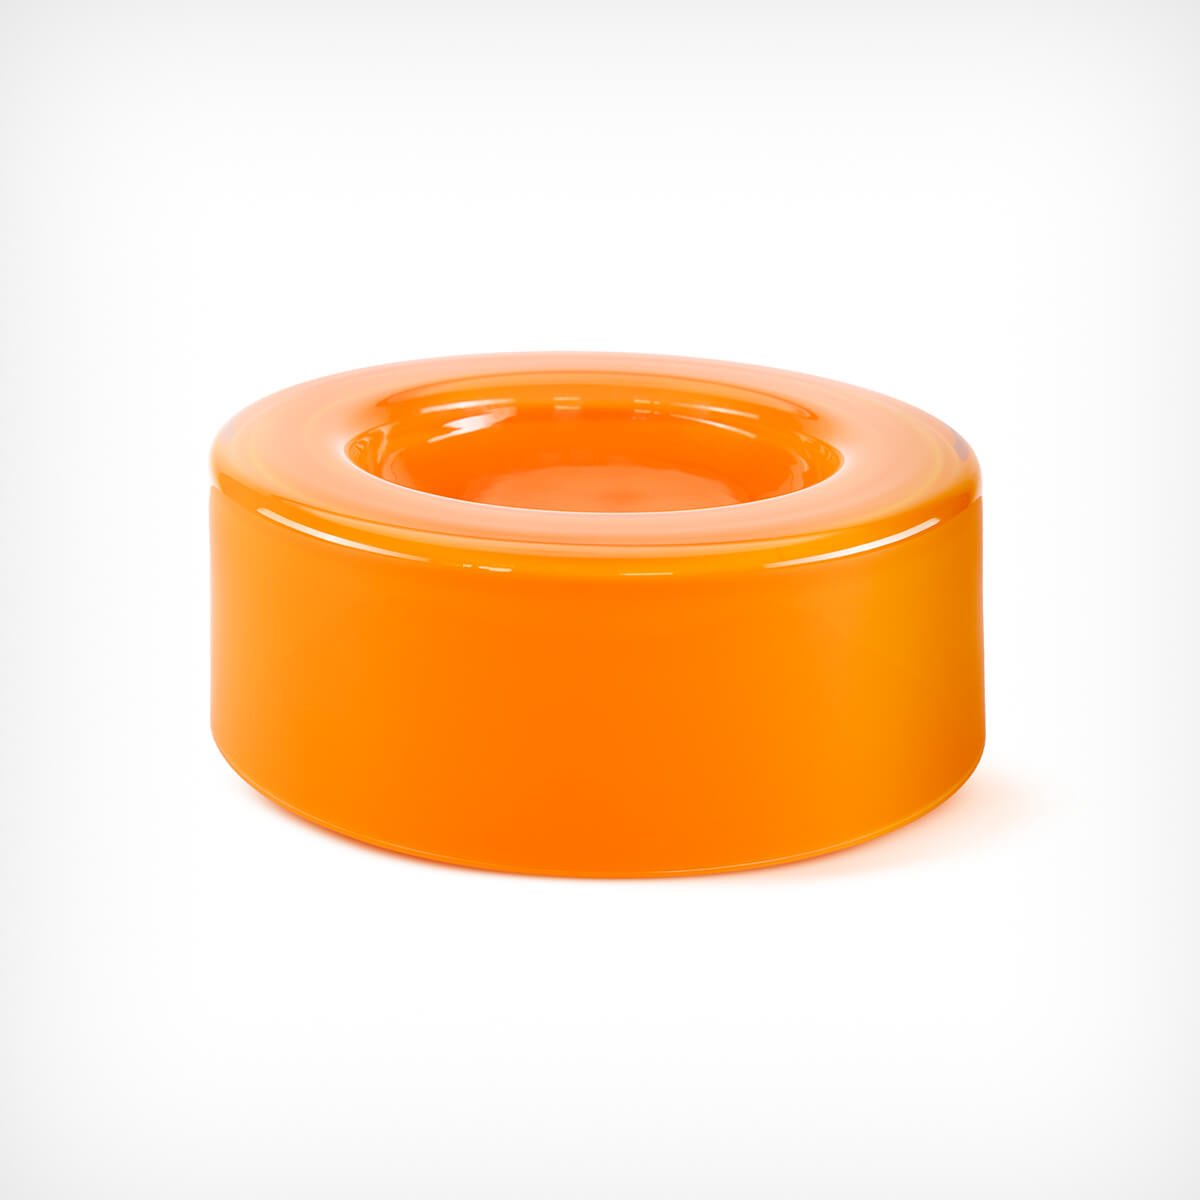 Schale „WET Bowl” Orange mittelgroß Ursula Futura – diesellerie.com